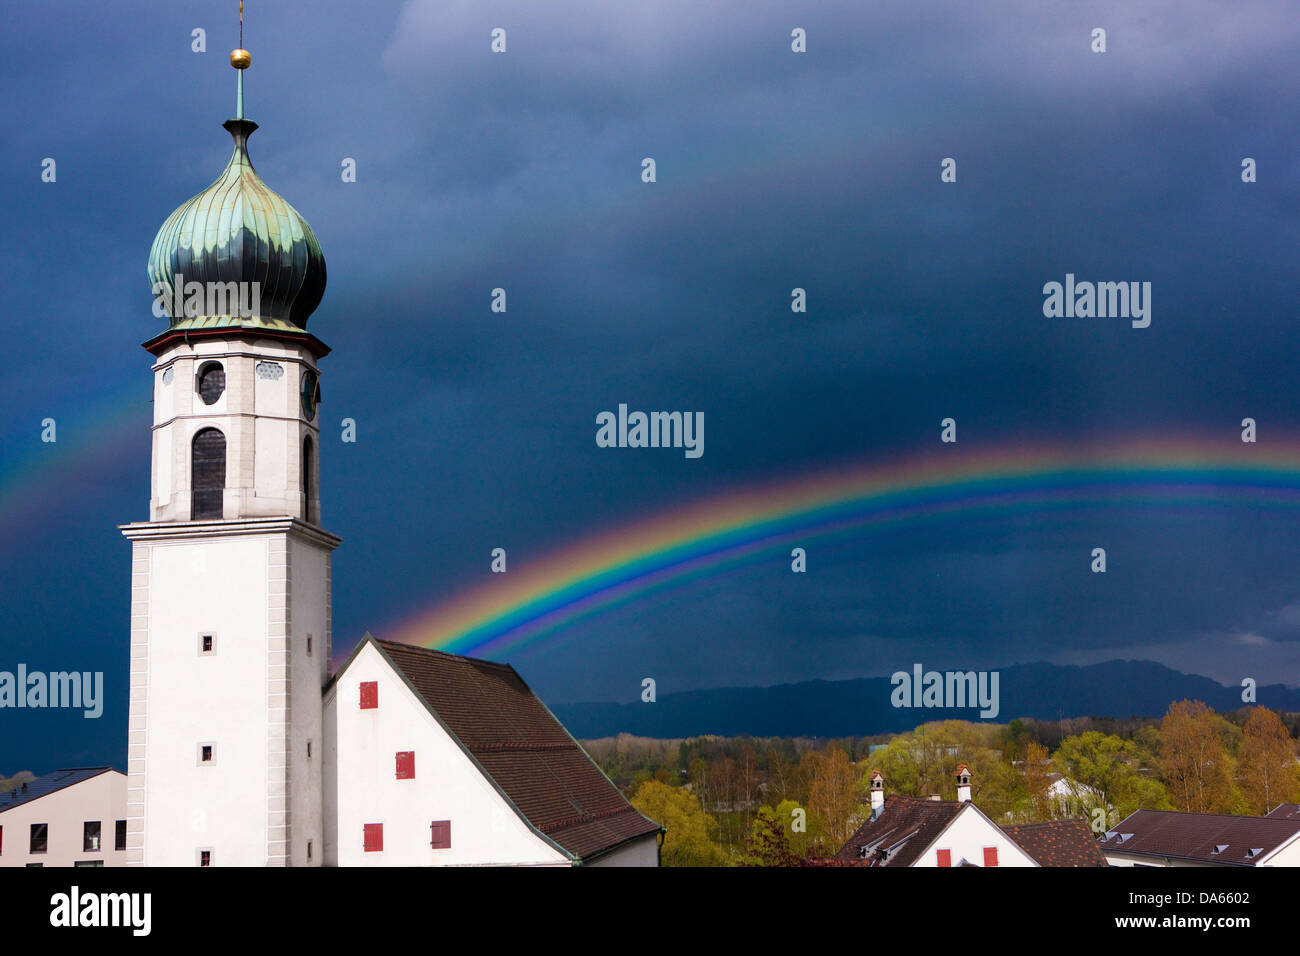 Protestante reformada, Iglesia, Rheineck, Rainbow, cantón, SG, St. Gallen, meteorología, nubes, nubes, Suiza, Europa, Foto de stock